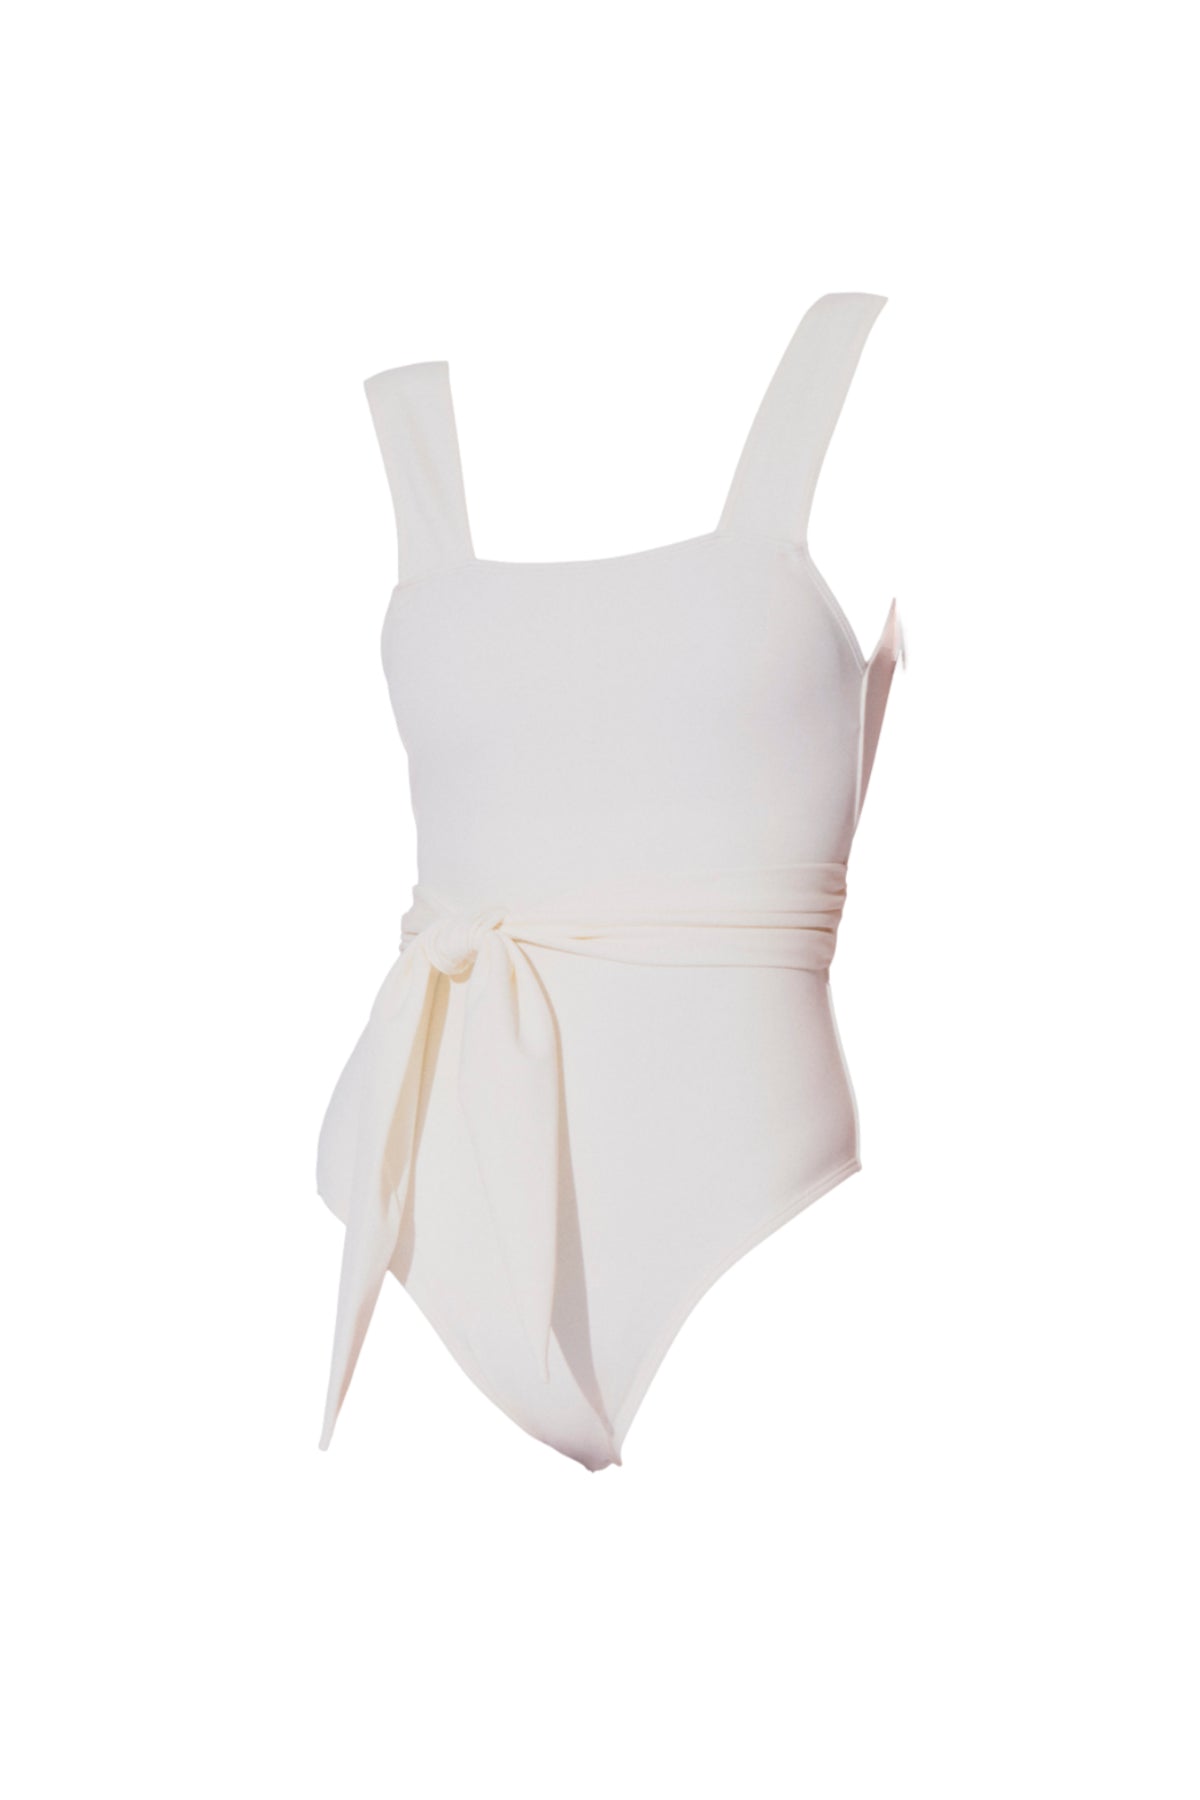 Chikyu belted one piece swimming suit in white from luxury sustainable swimwear brand Koraru